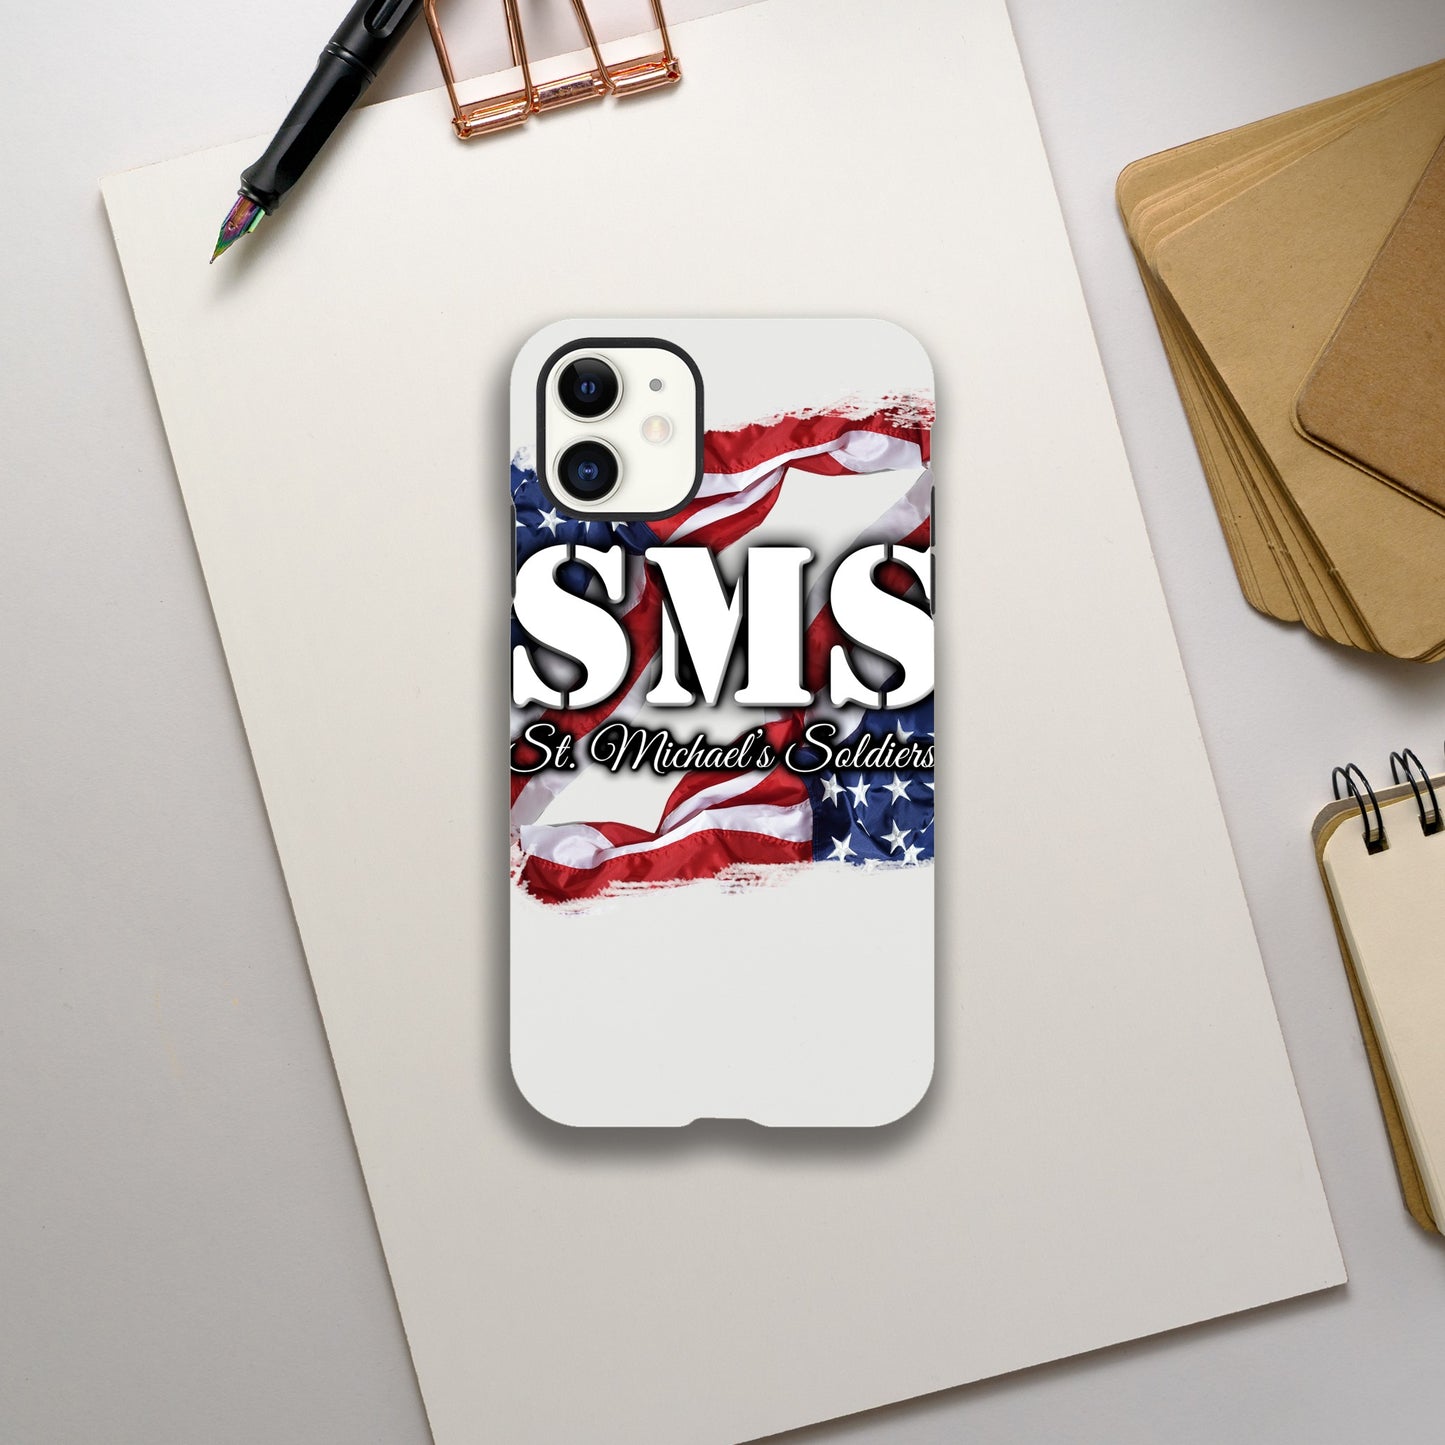 SMS (Flag1) - iPhone Tough case